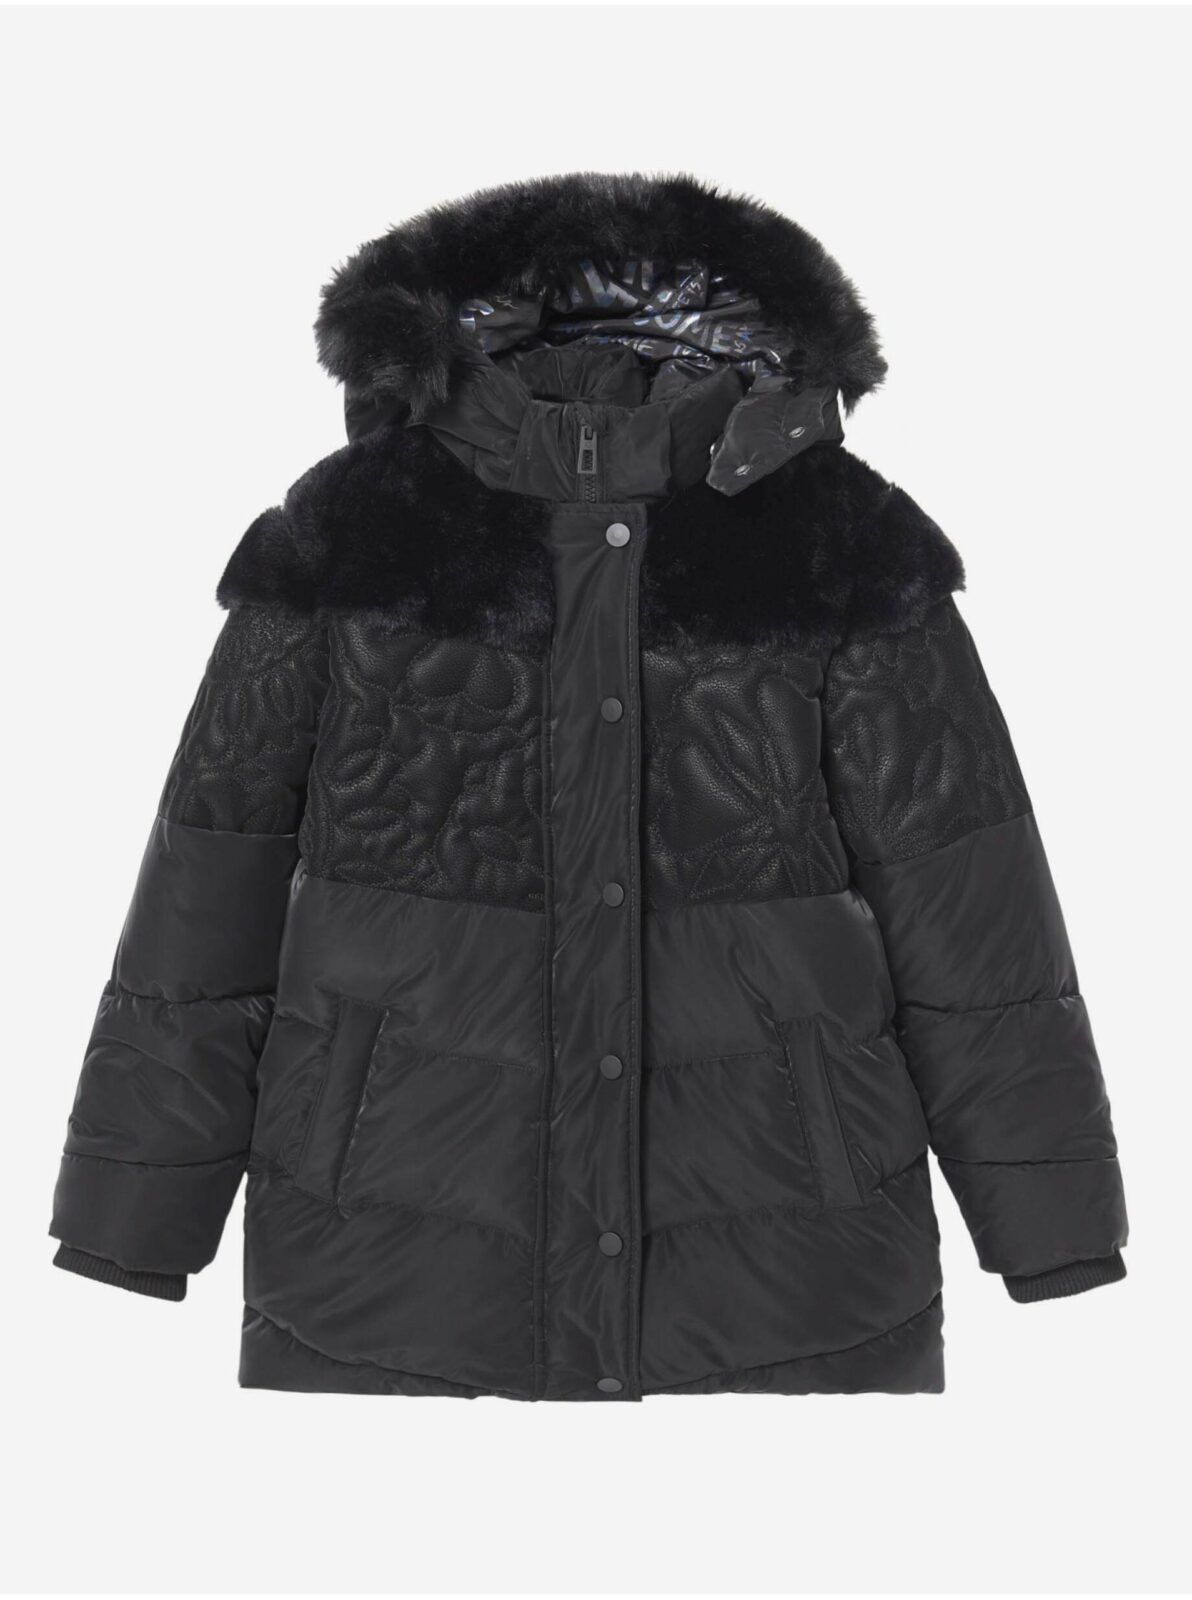 Černá dívčí vzorovaná zimní bunda s kapucí a